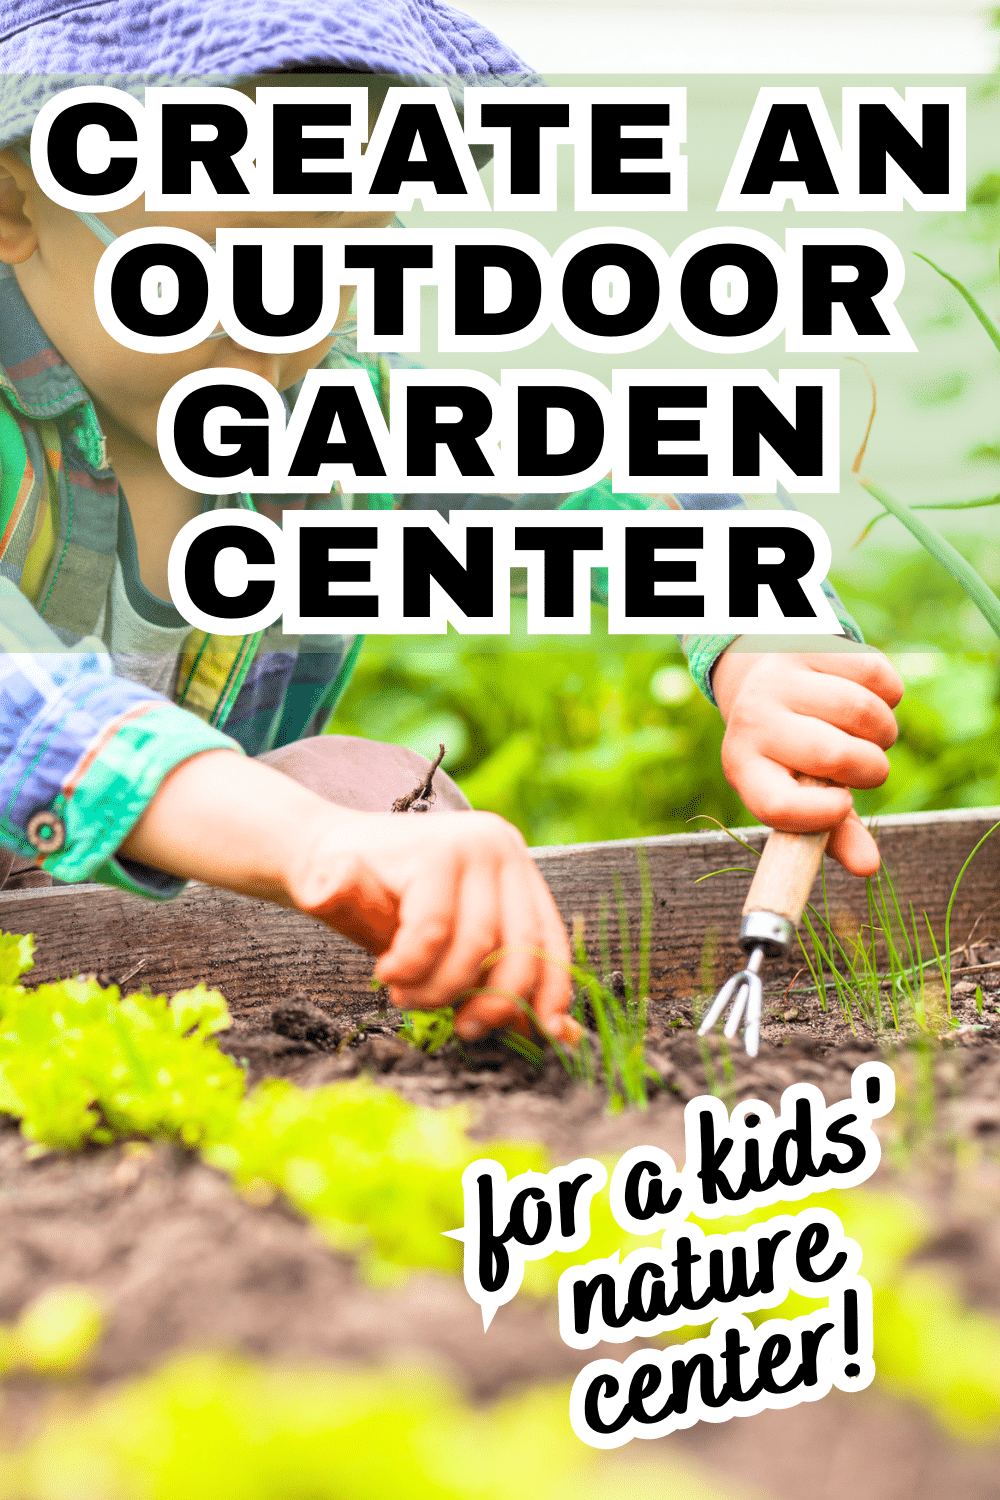 Outdoor Class Room Garden For Kids text over hands of child in garden